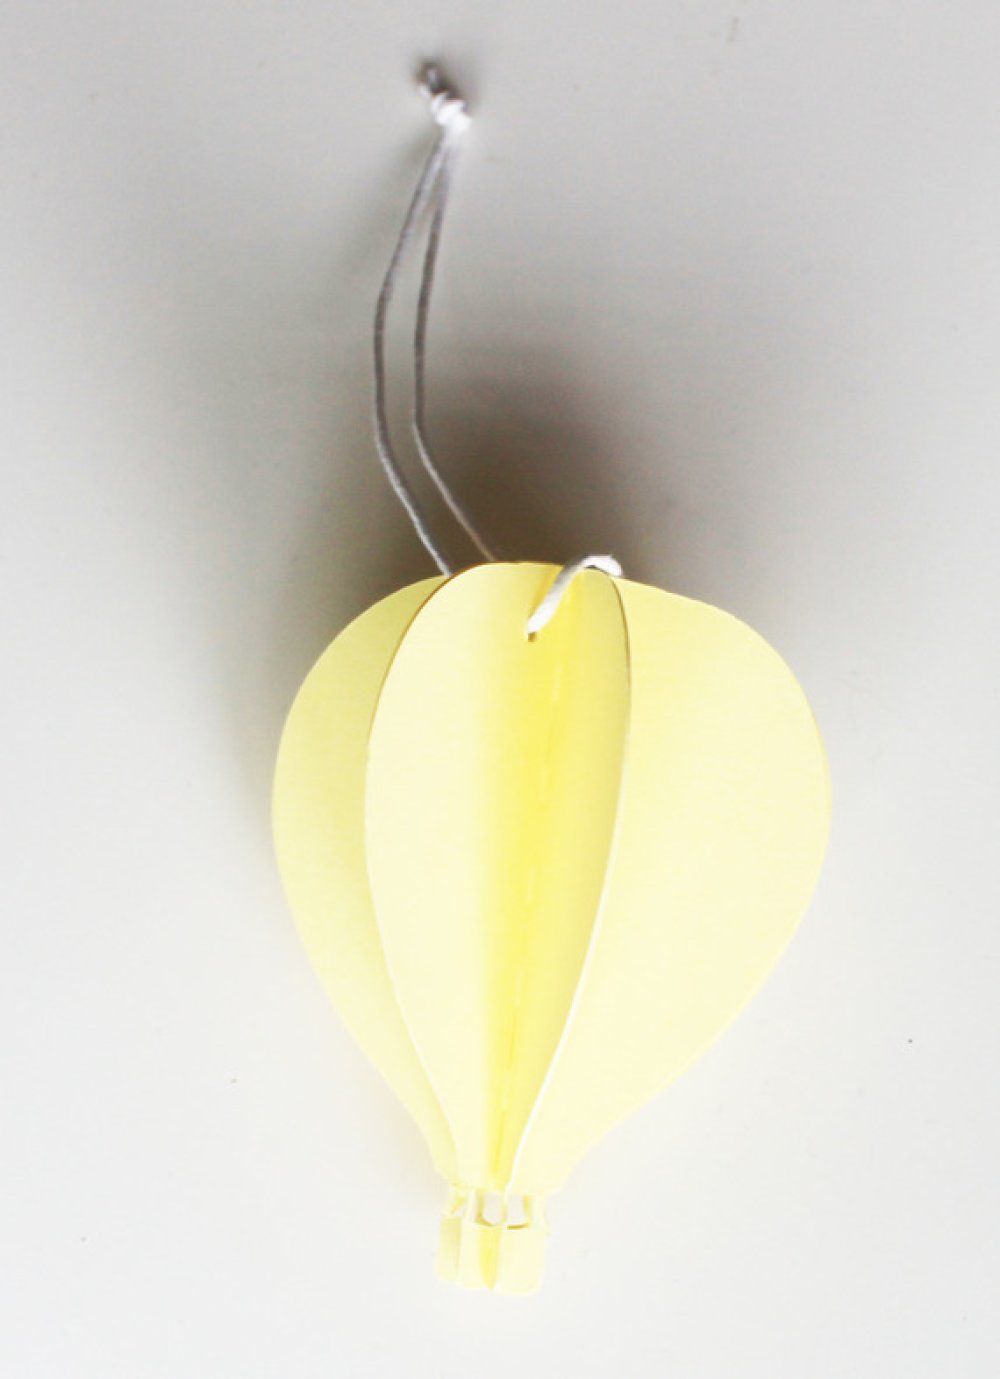 Montgolfière décorative - Petit - Jaune et blanc - Super Balloon